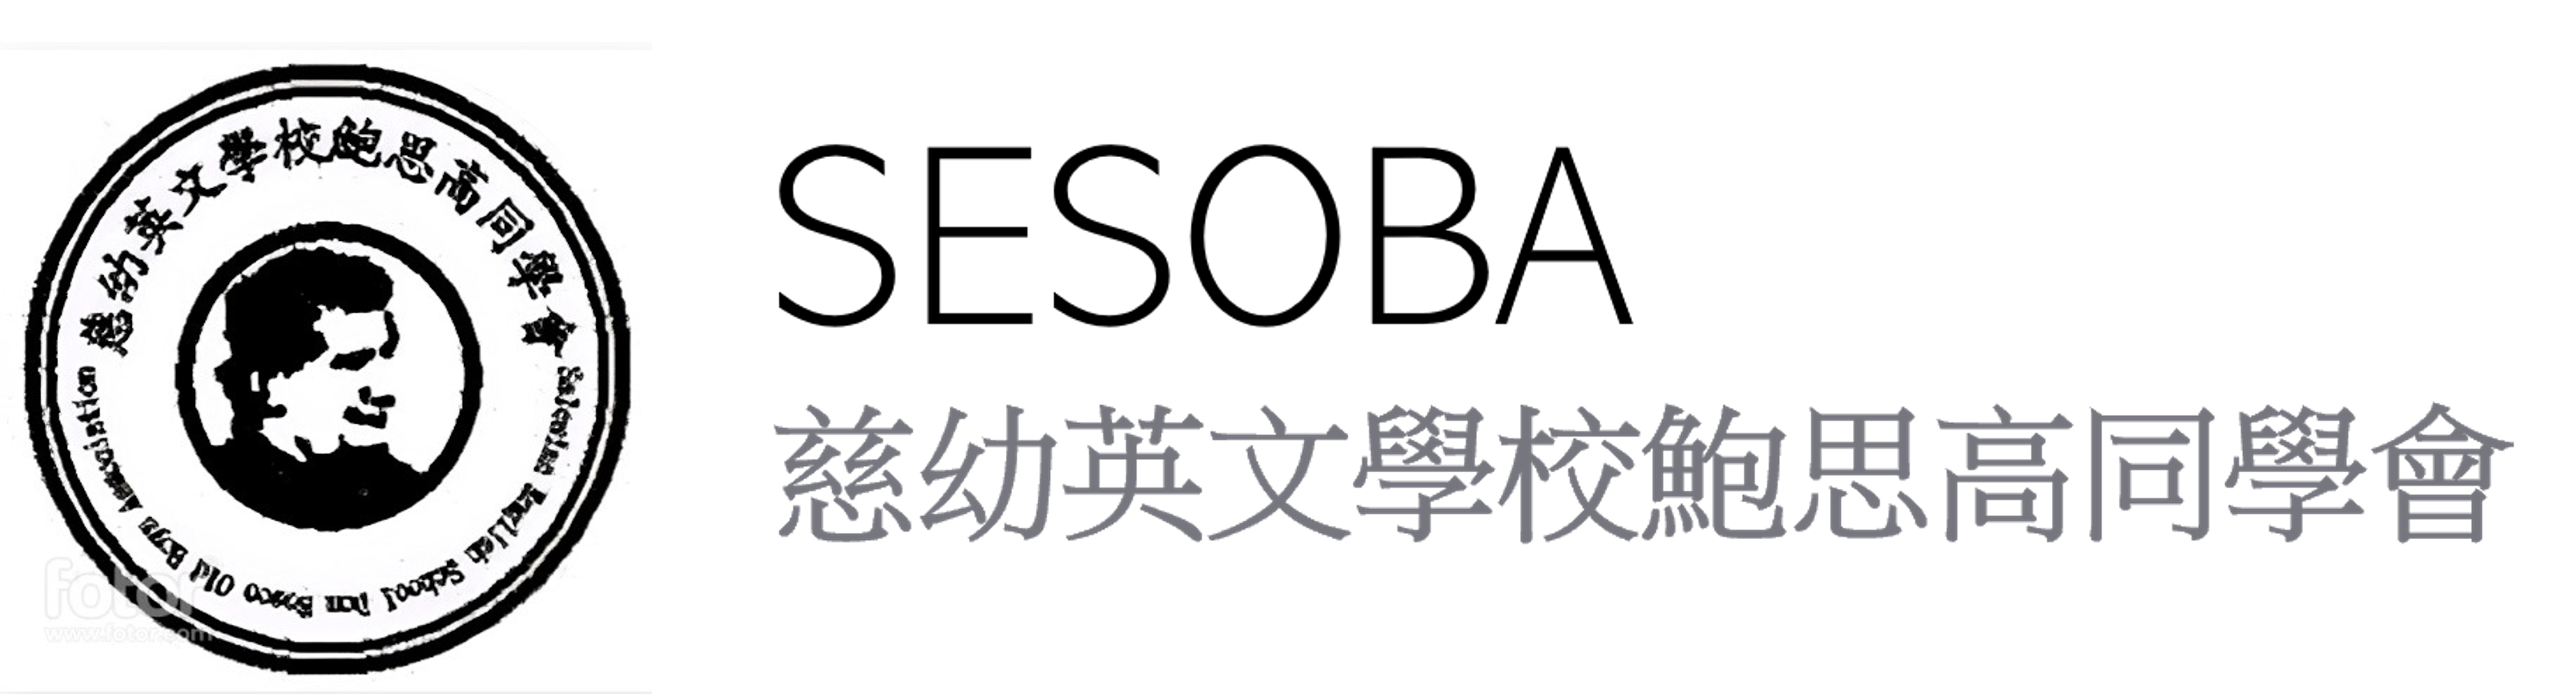 慈幼英文學校鮑思高同學會 logo for desktop